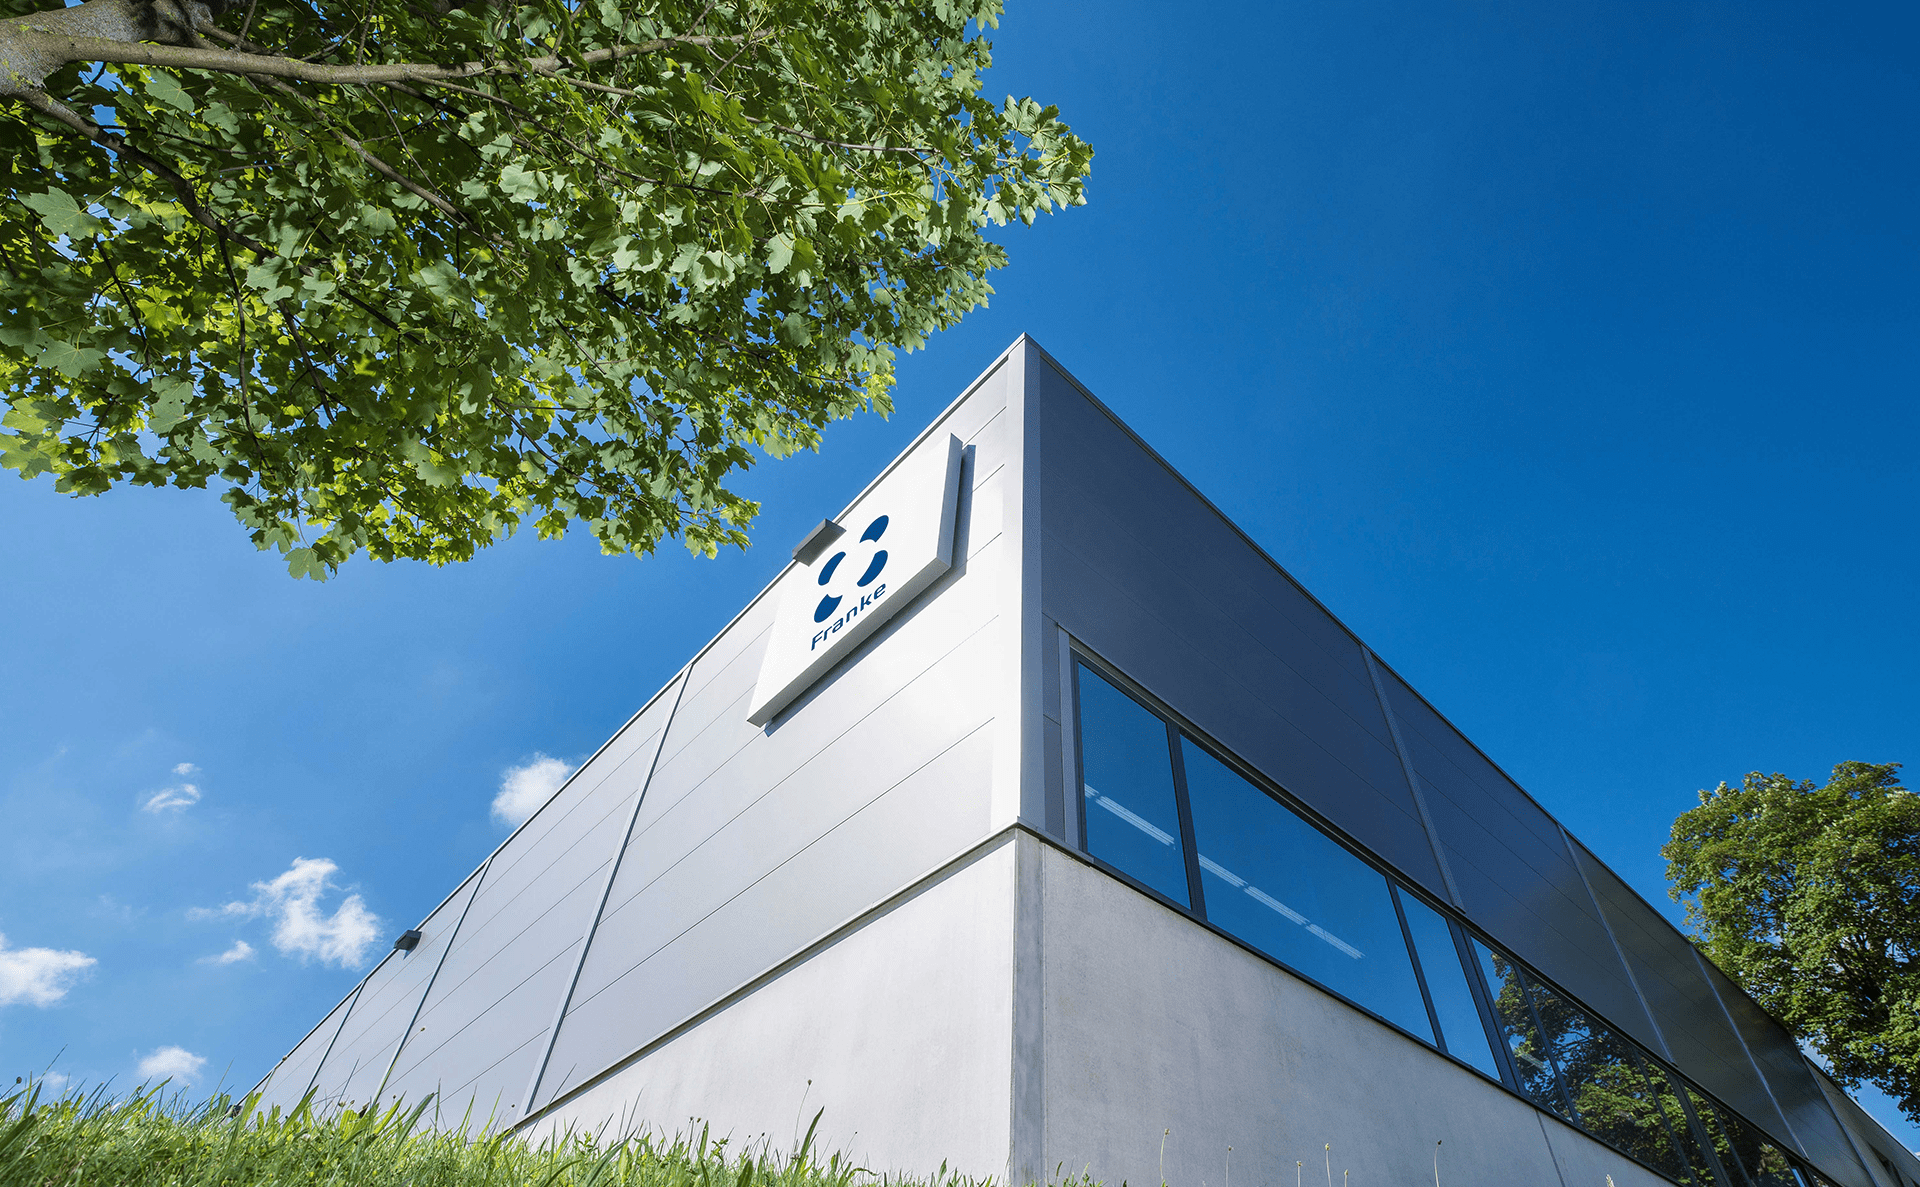 Gebäude der Franke GmbH - Dem Spezialisten für Wälzlager, Kugellager und Linearführungen